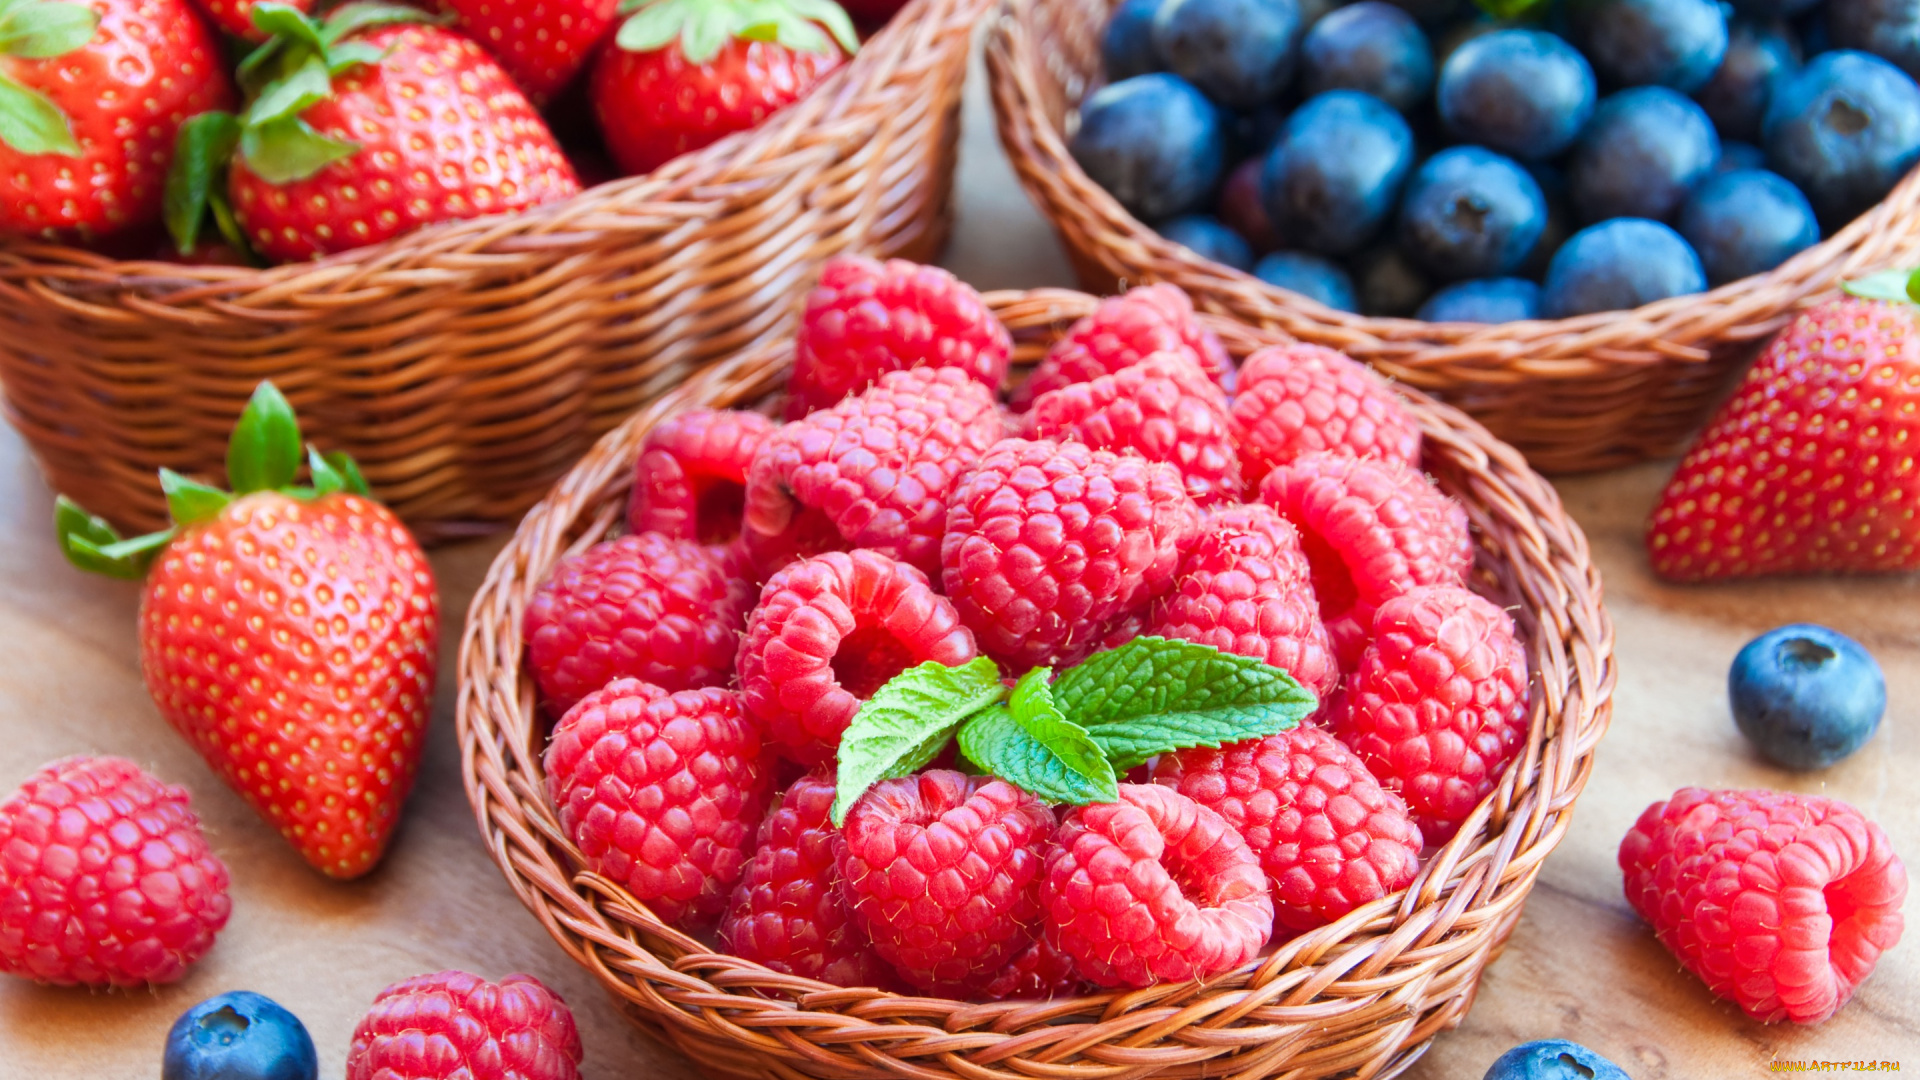 еда, фрукты, , ягоды, корзинка, клубника, черника, малина, ягоды, fresh, berries, мята